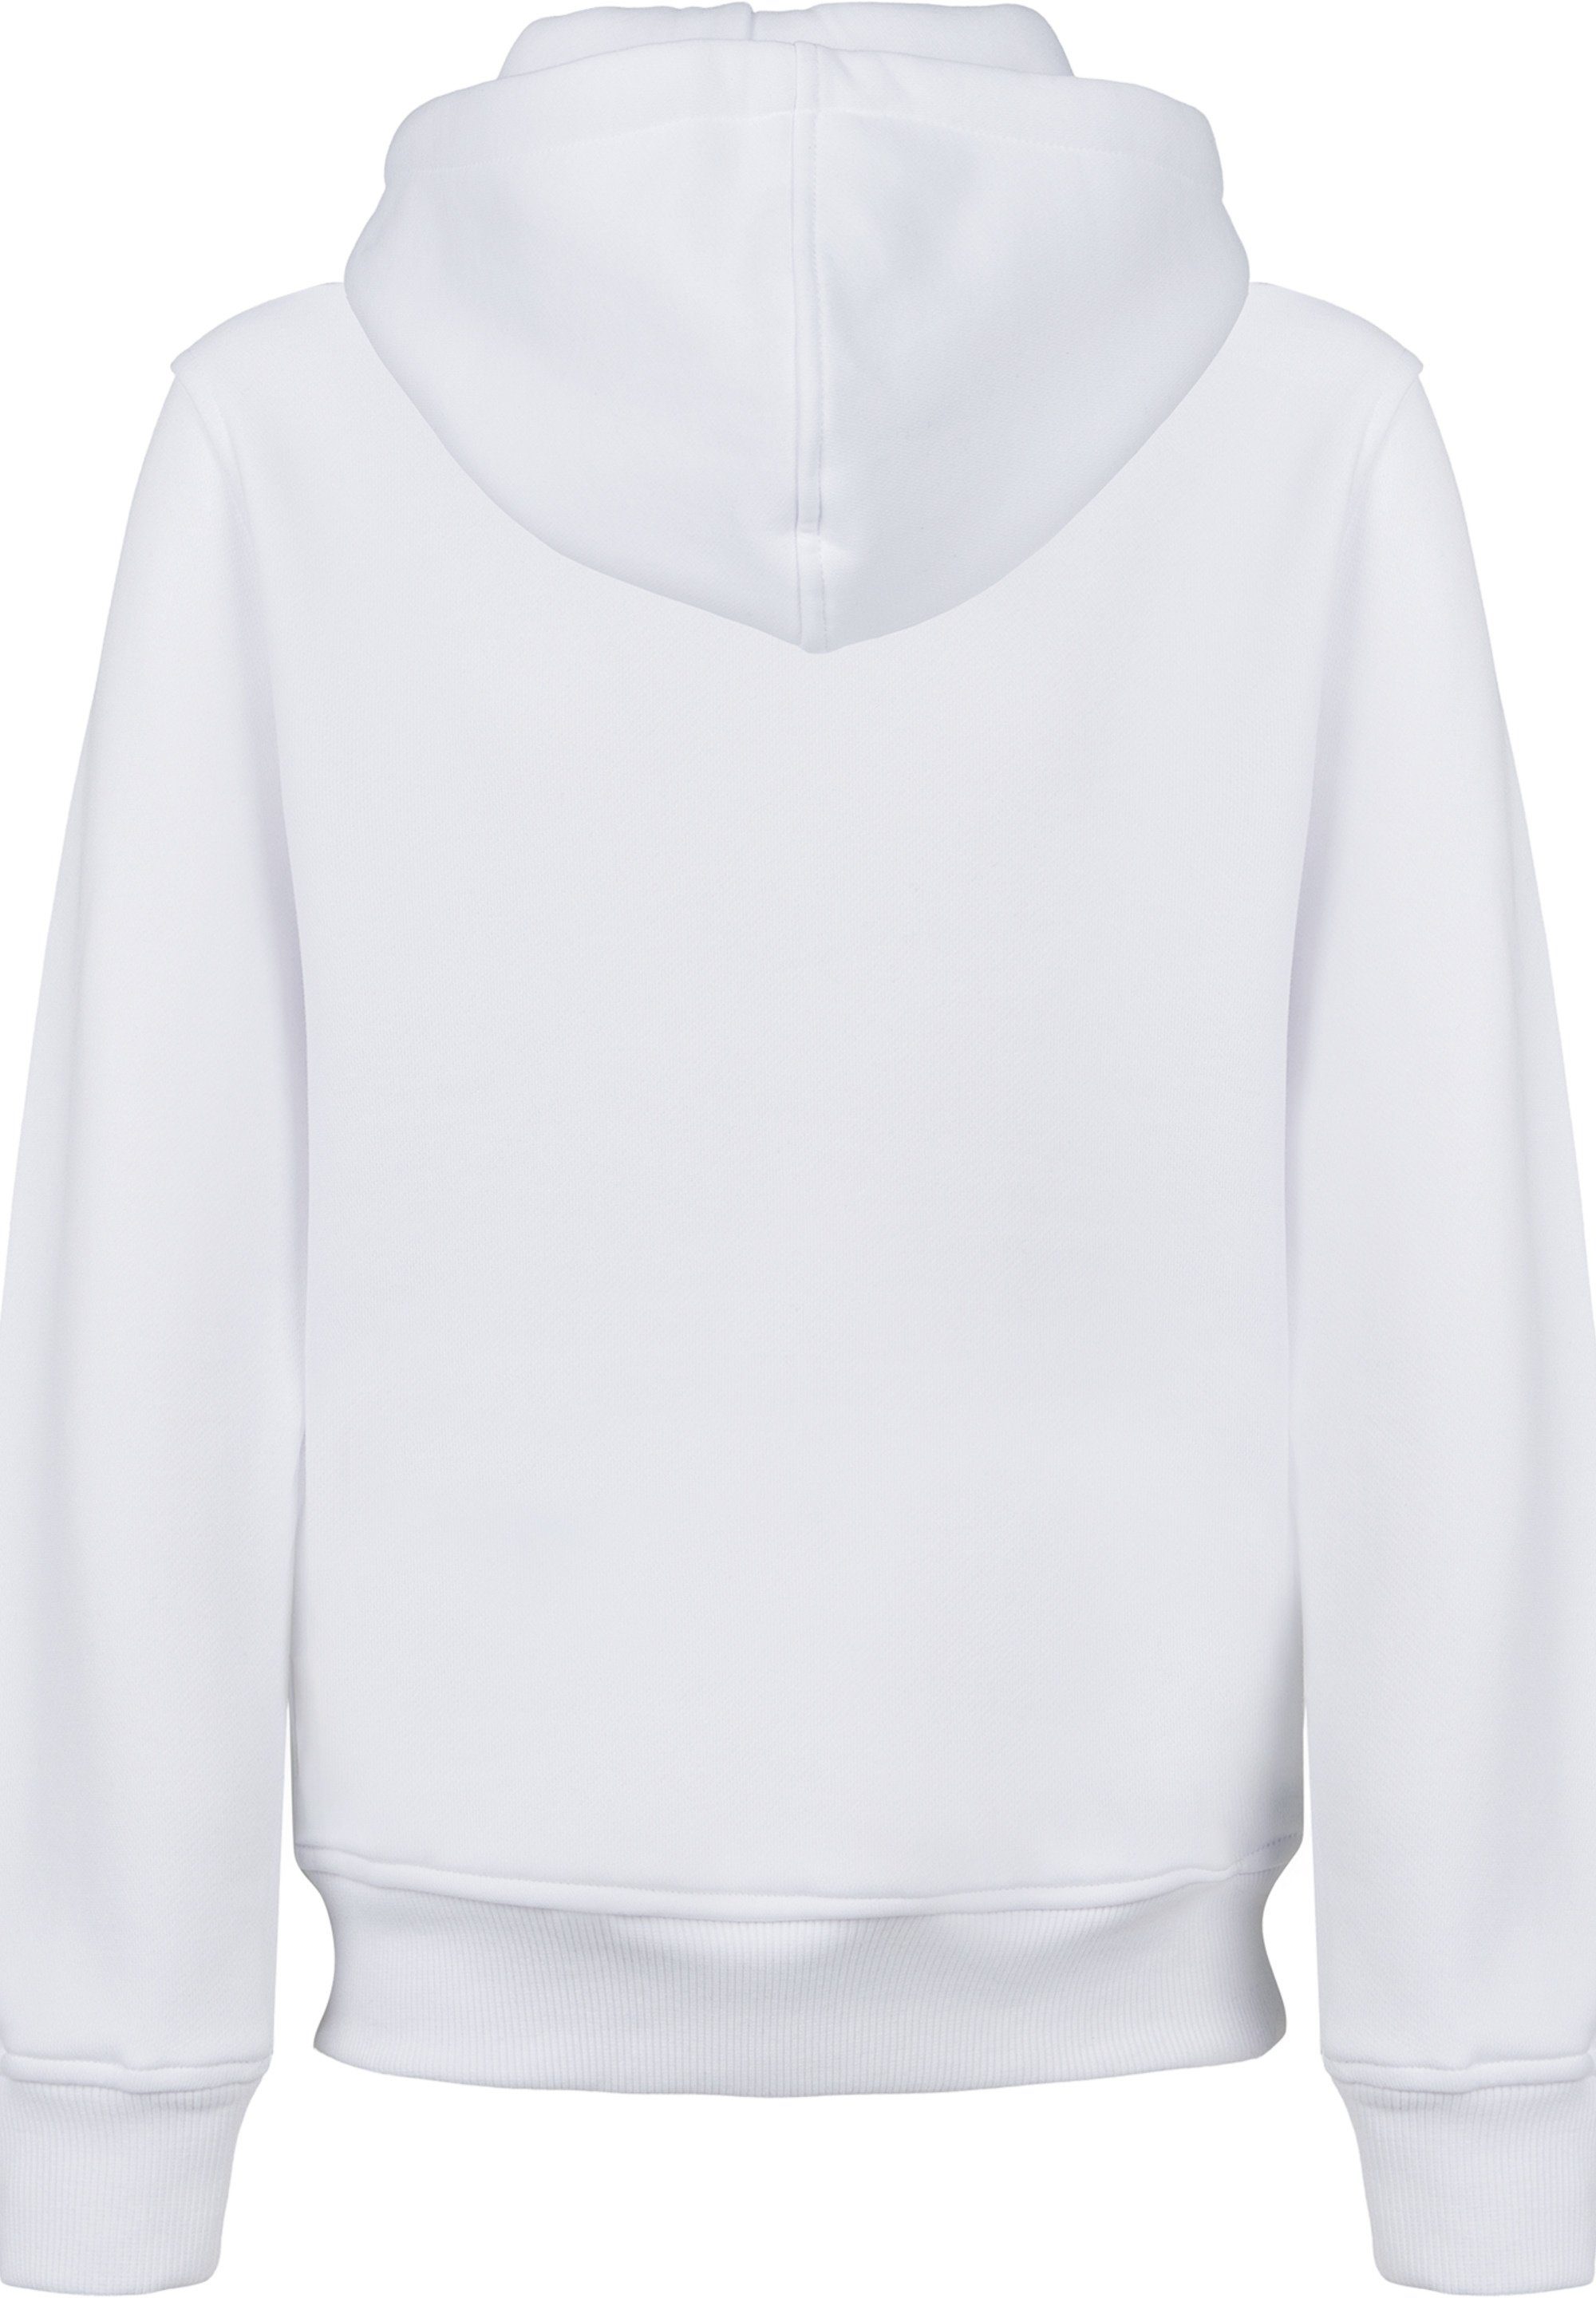 F4NT4STIC Sweatshirt NASA Classic Space Kinder,Premium Unisex Merch,Jungen,Mädchen,Bedruckt Shuttle White